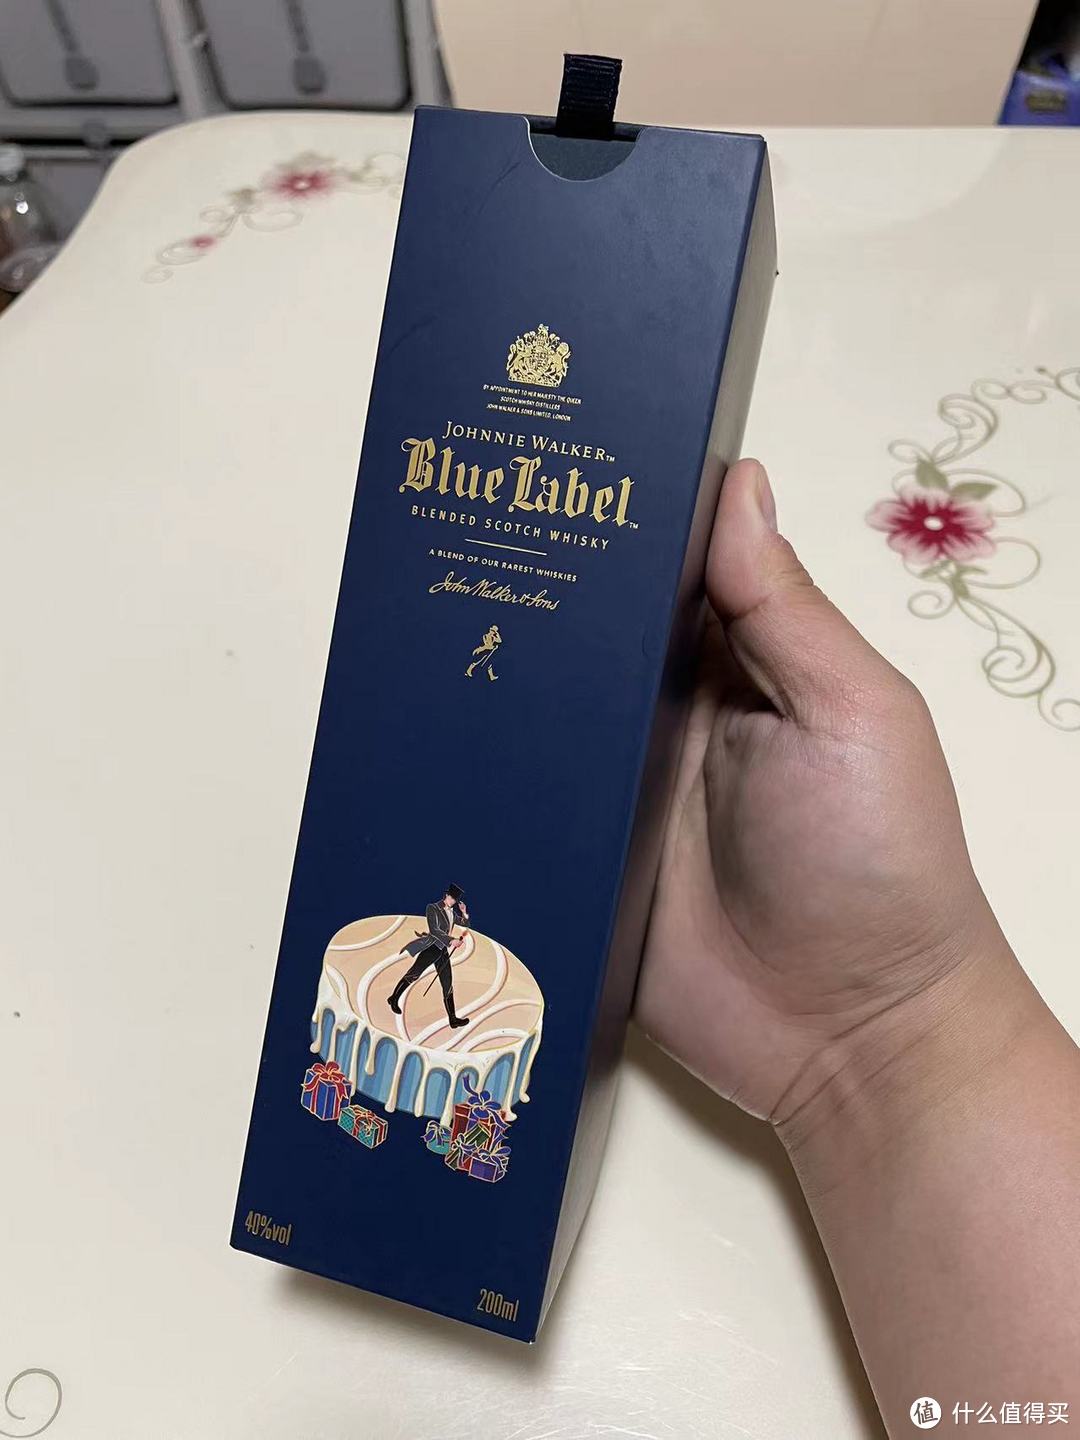 尊尼获加常规款的金字塔尖 - 大户的婚宴用酒-蓝牌Blue label